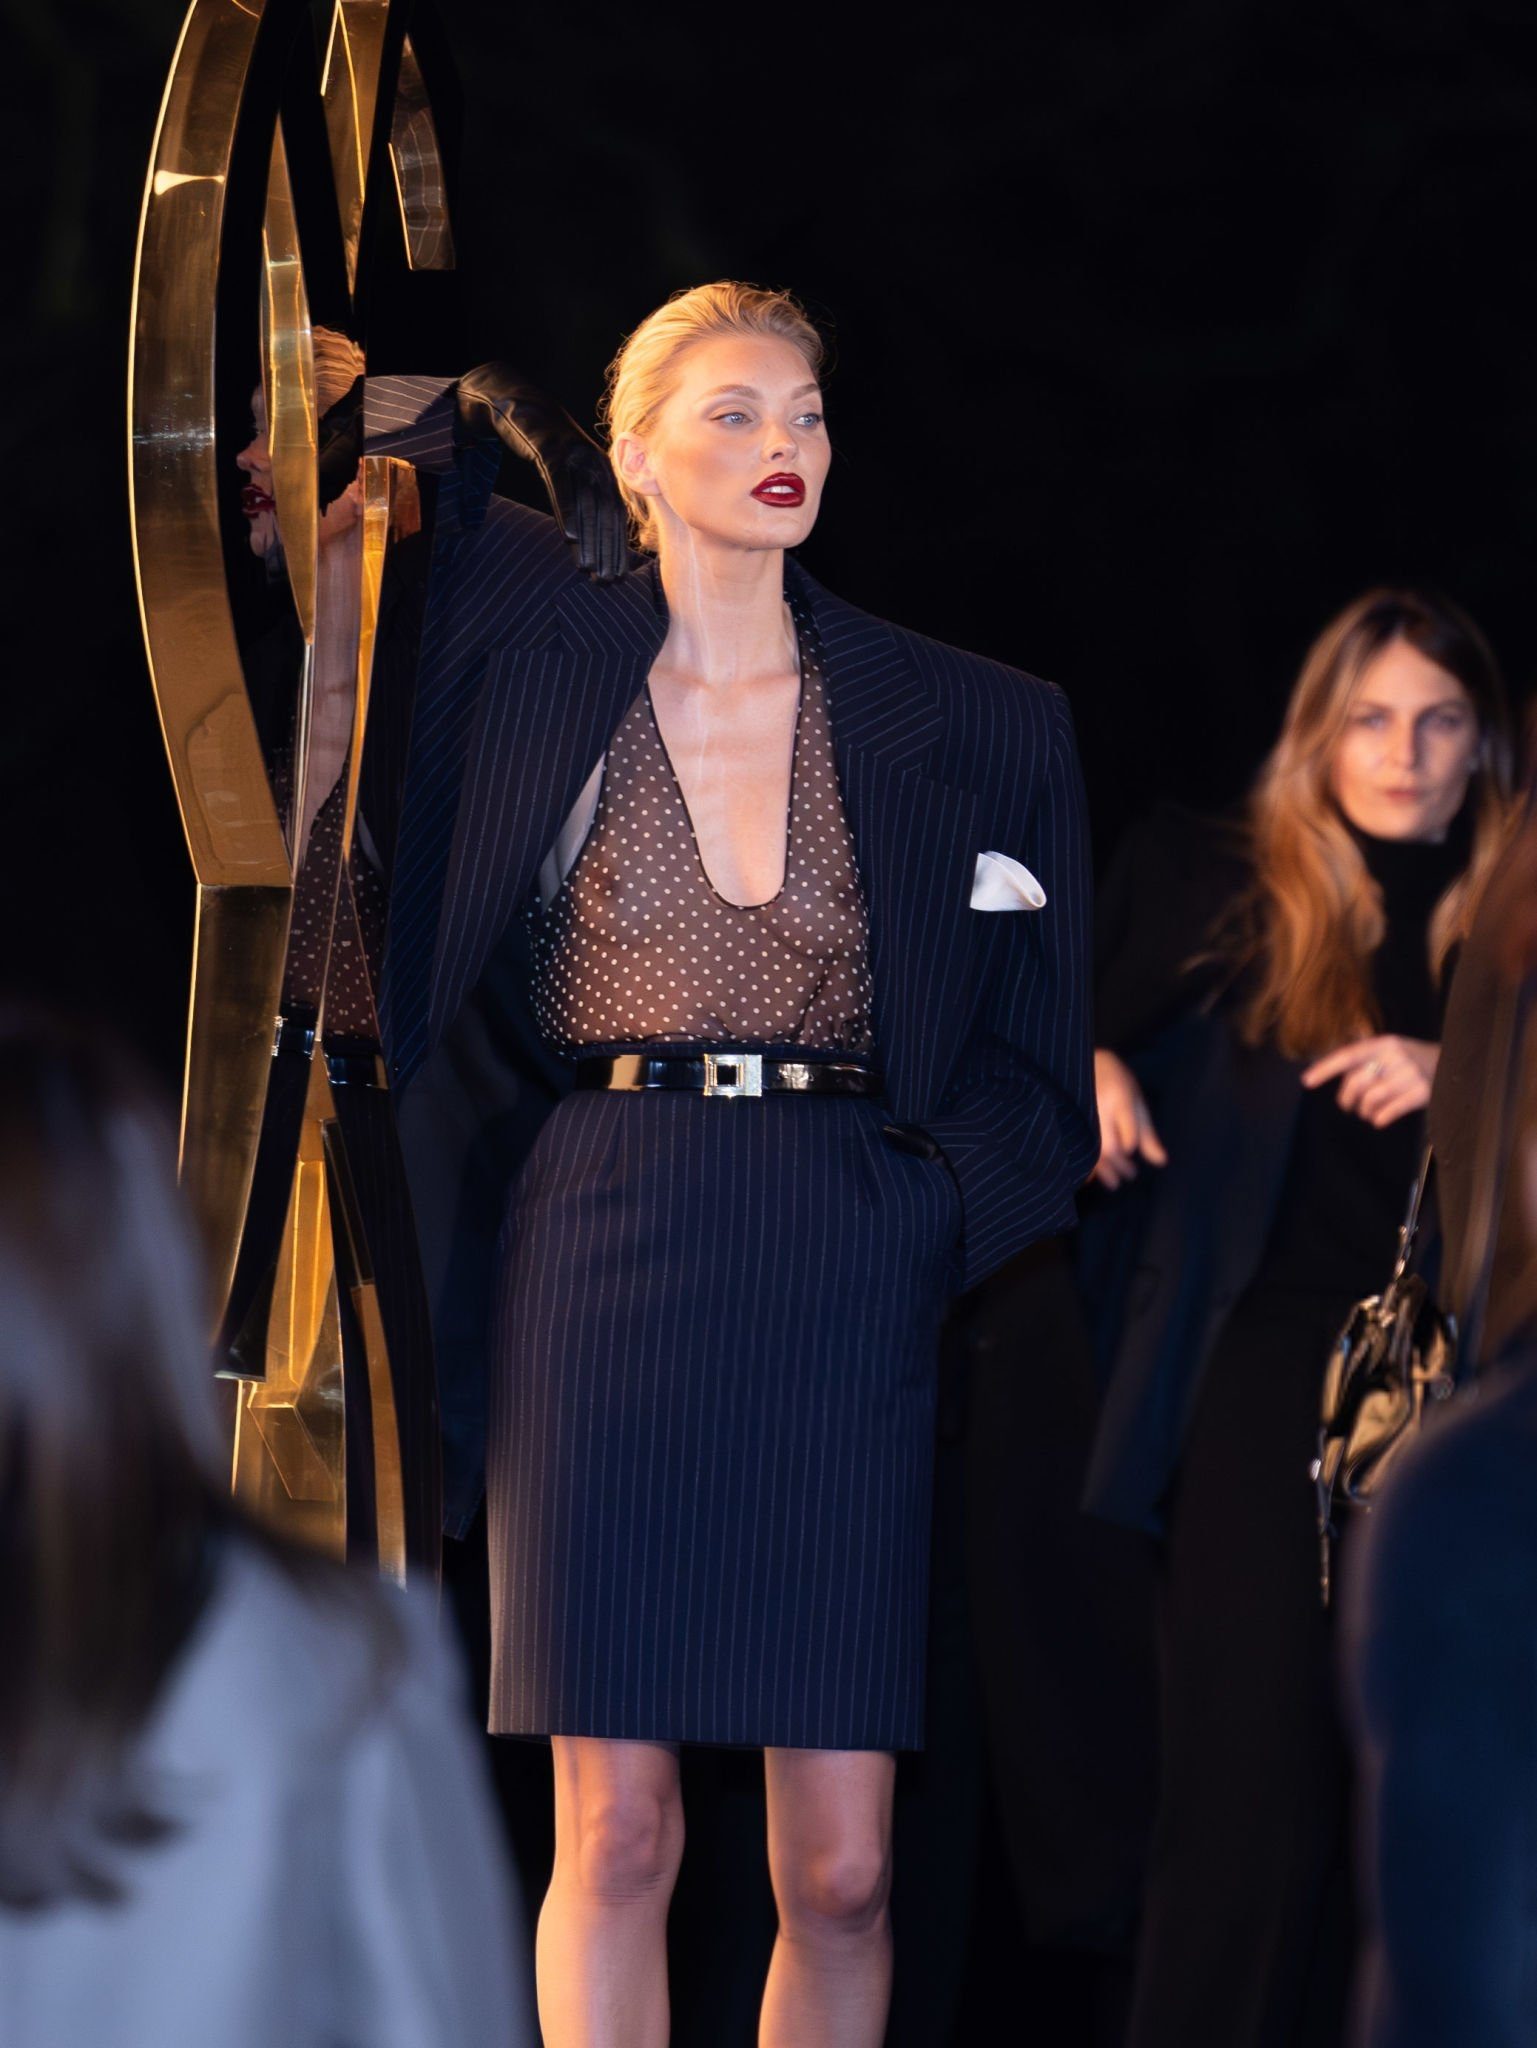 Эльза Хоск появилась на модном показе в прозрачной блузке. Топ фото и видео с показа в Париже, где моделям не понадобилось нижнее бельё